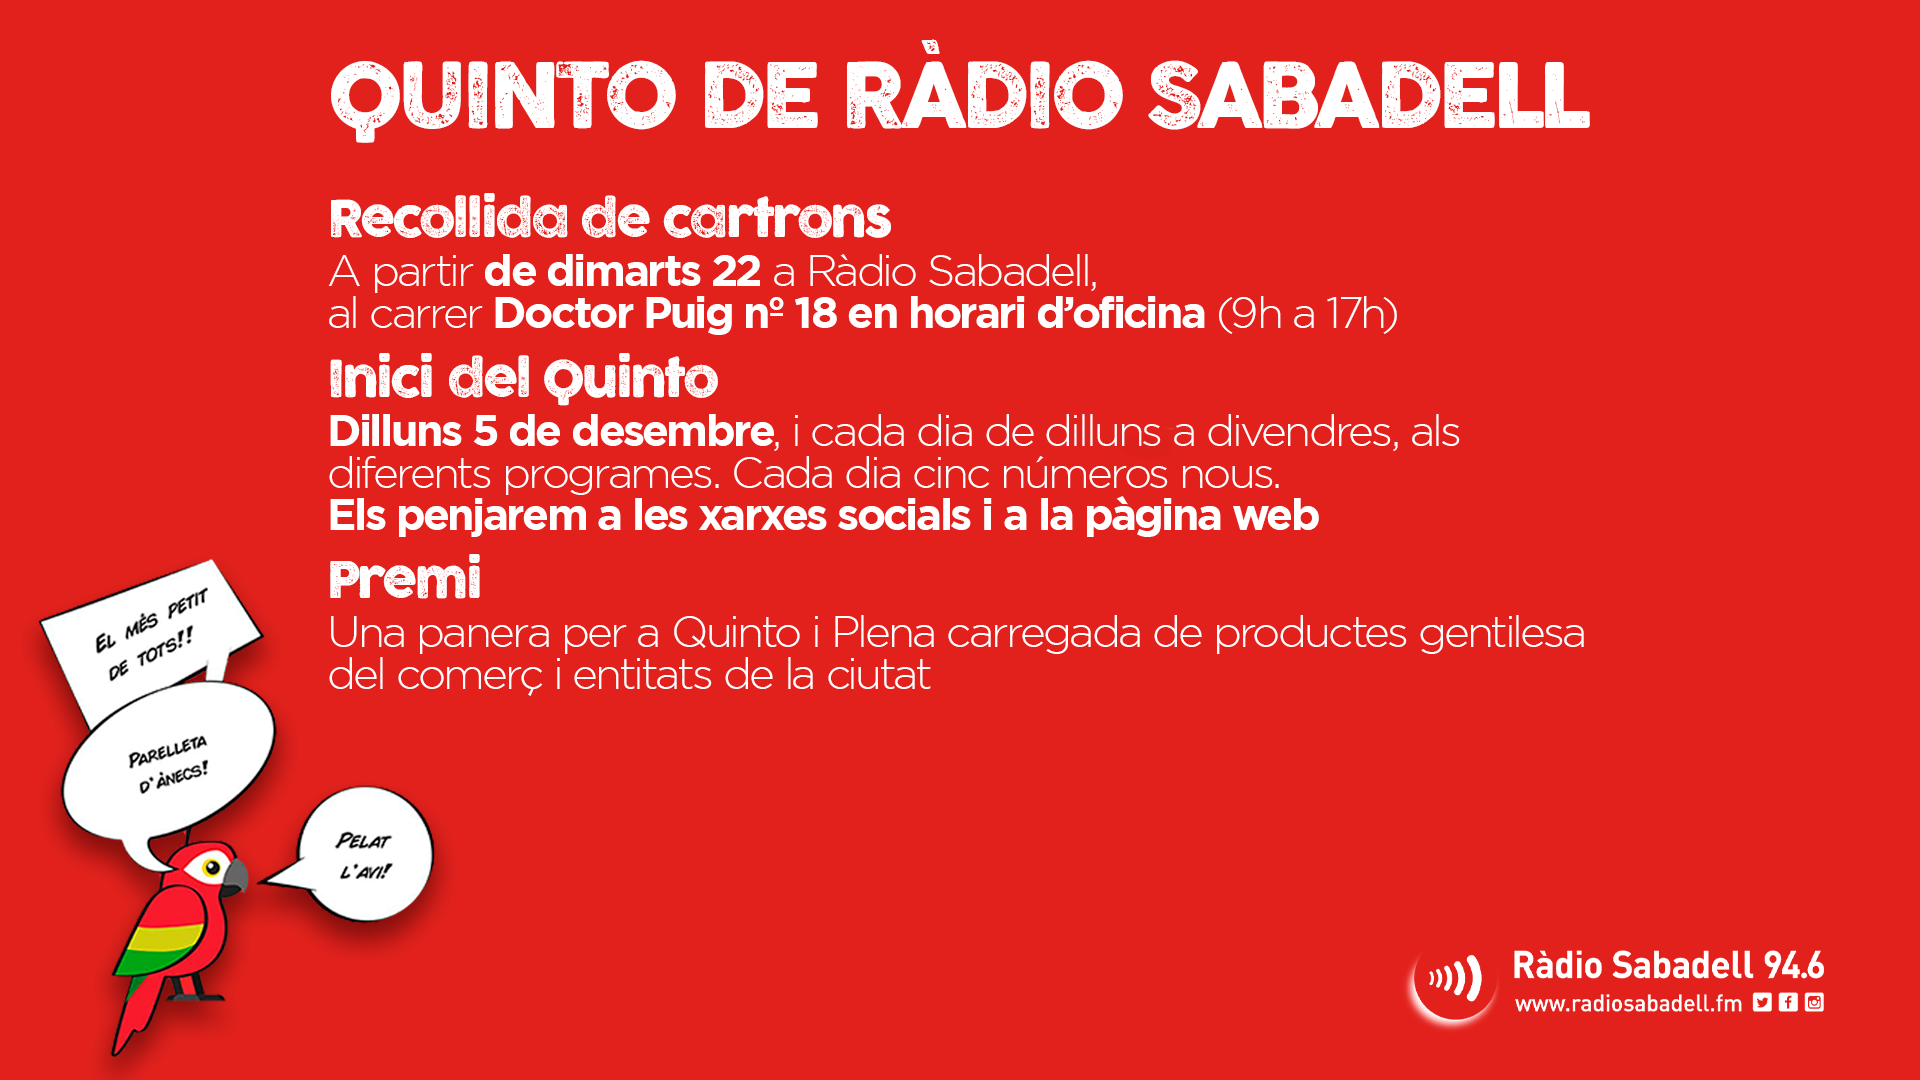 Torna el Quinto de Ràdio Sabadell